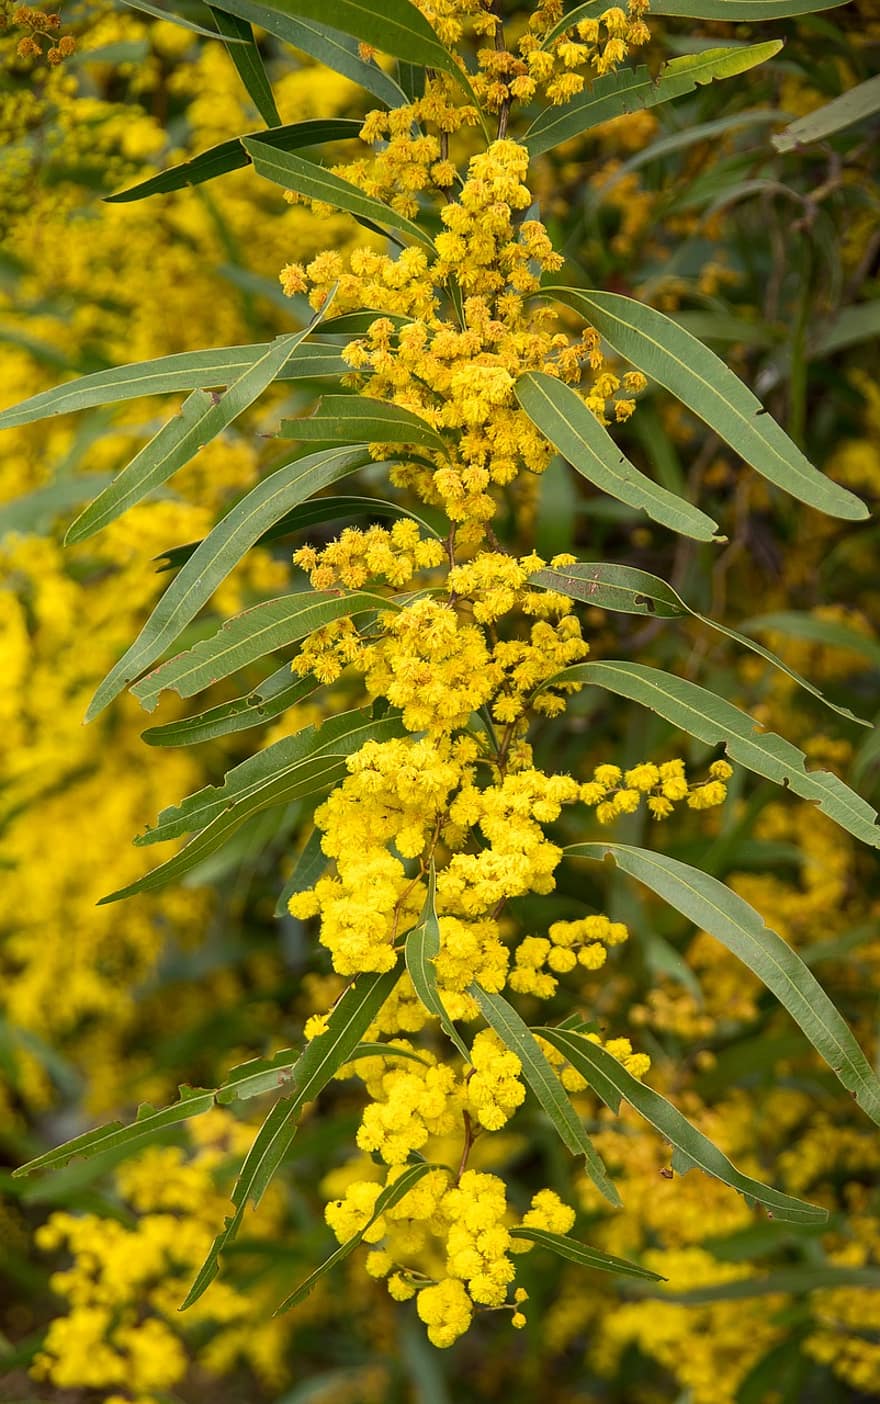 ακακία, βέργα, λουλούδια, γύρη, κίτρινος, χνουδωτός, Αυστραλιανή μητρική, pixabay